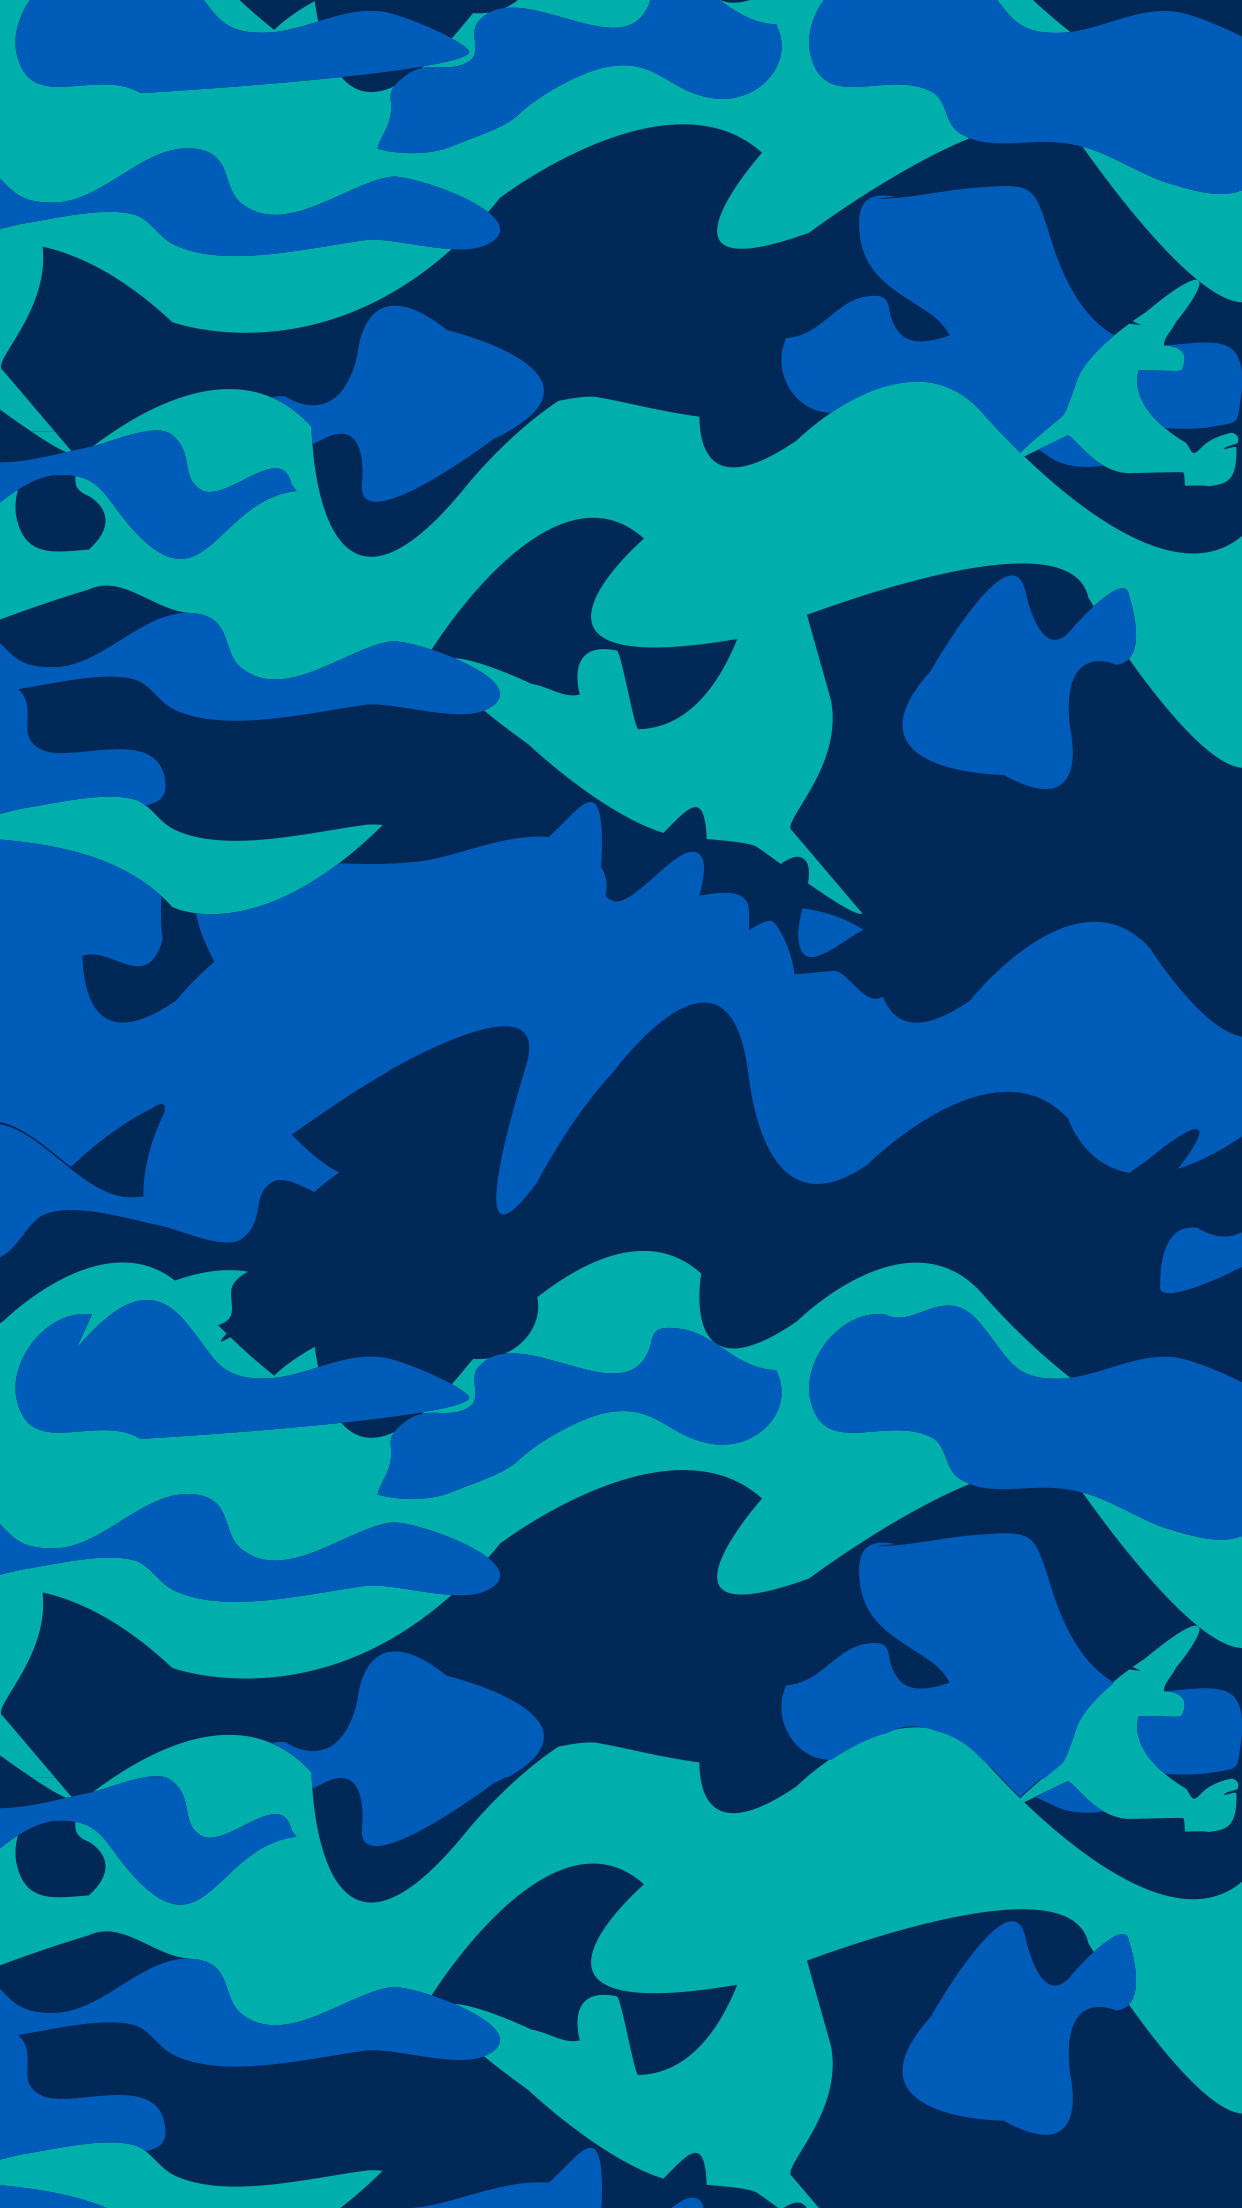 papel tapiz de tiburón bape,azul,agua,modelo,azul cobalto,turquesa